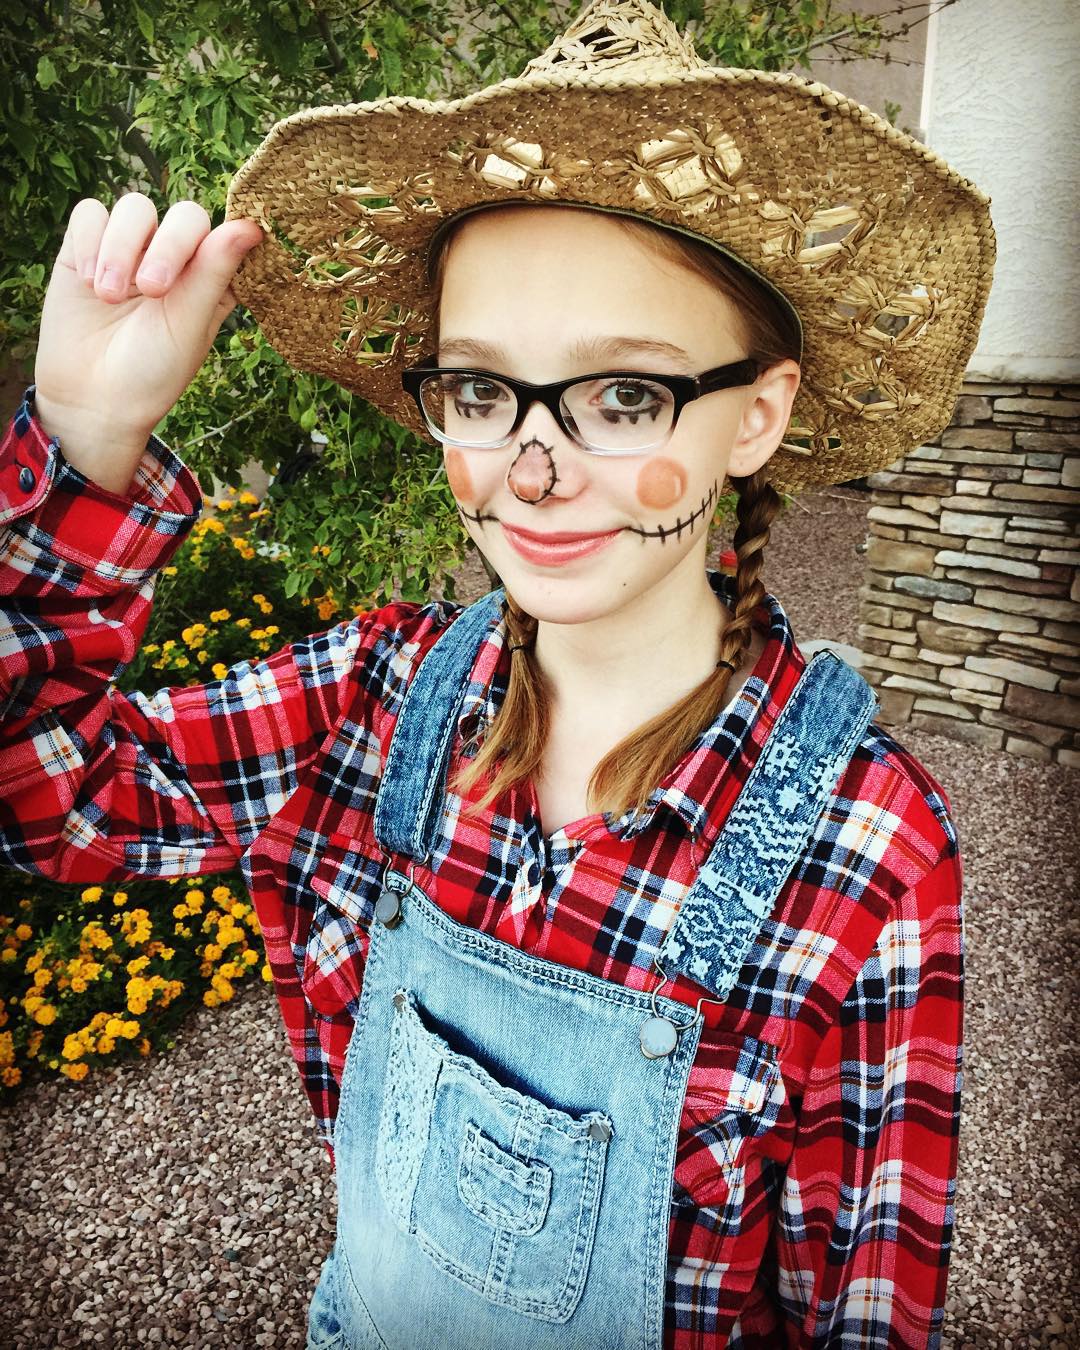 baby scarecrow costume